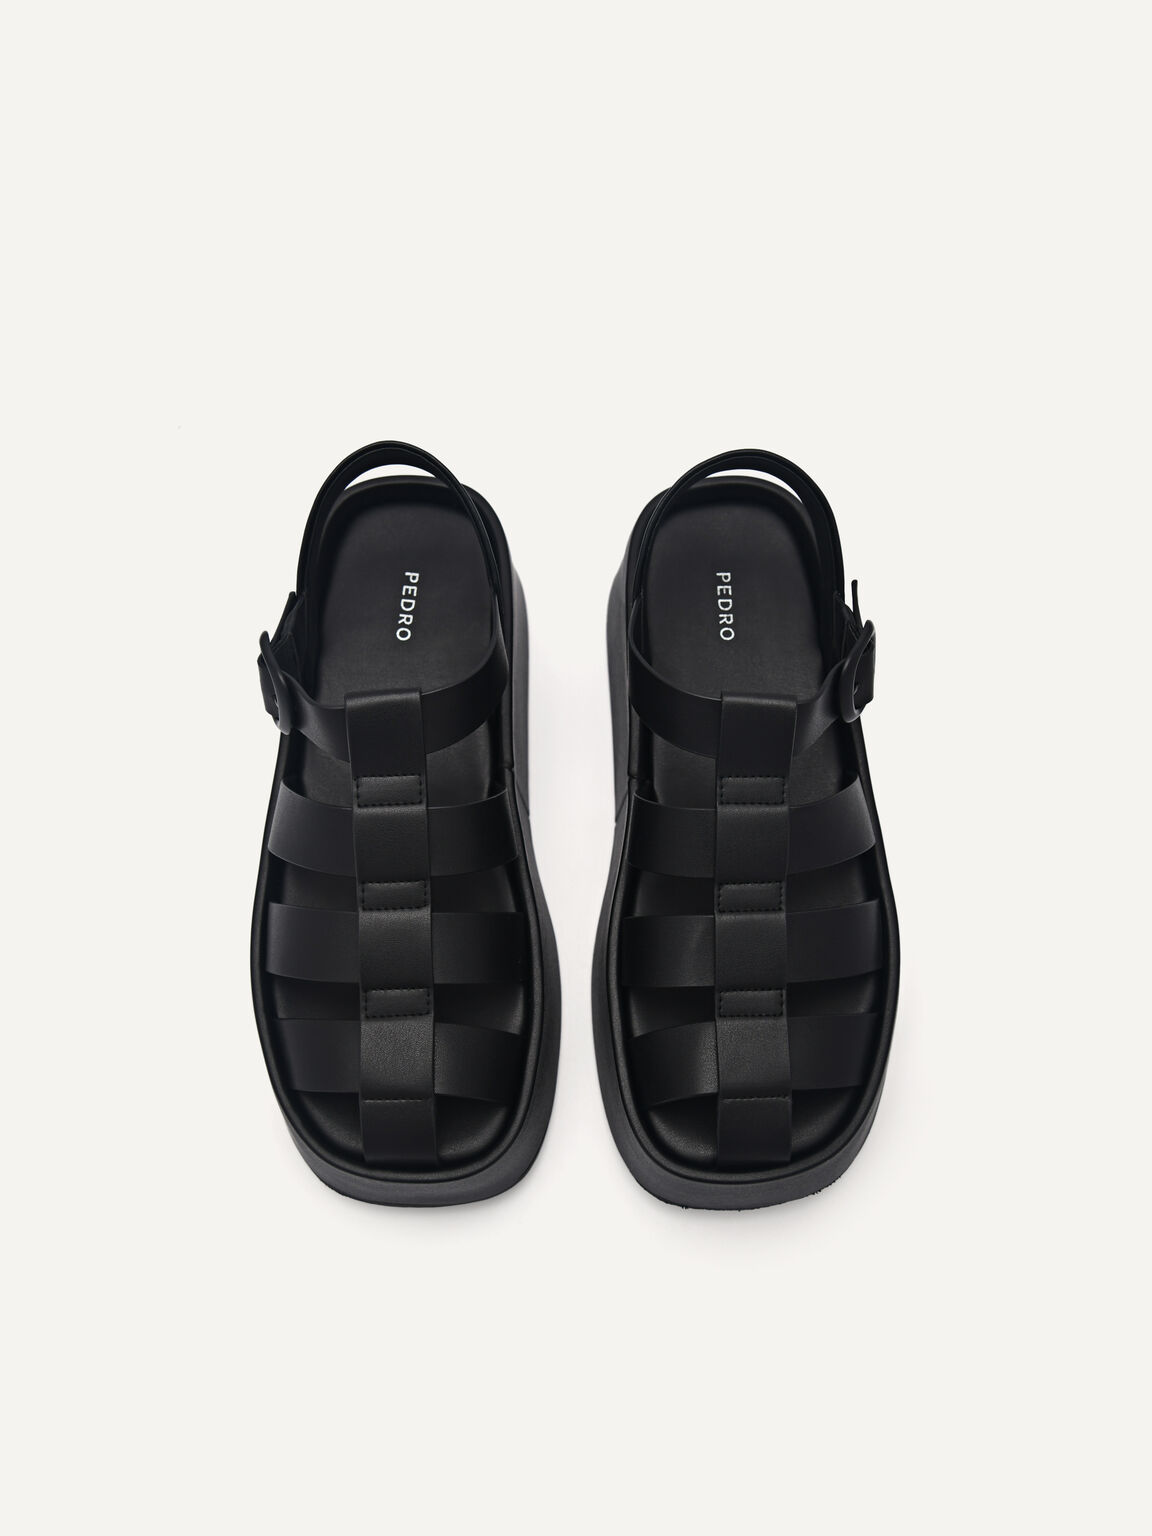 Palma Platform Sandals, Black, hi-res